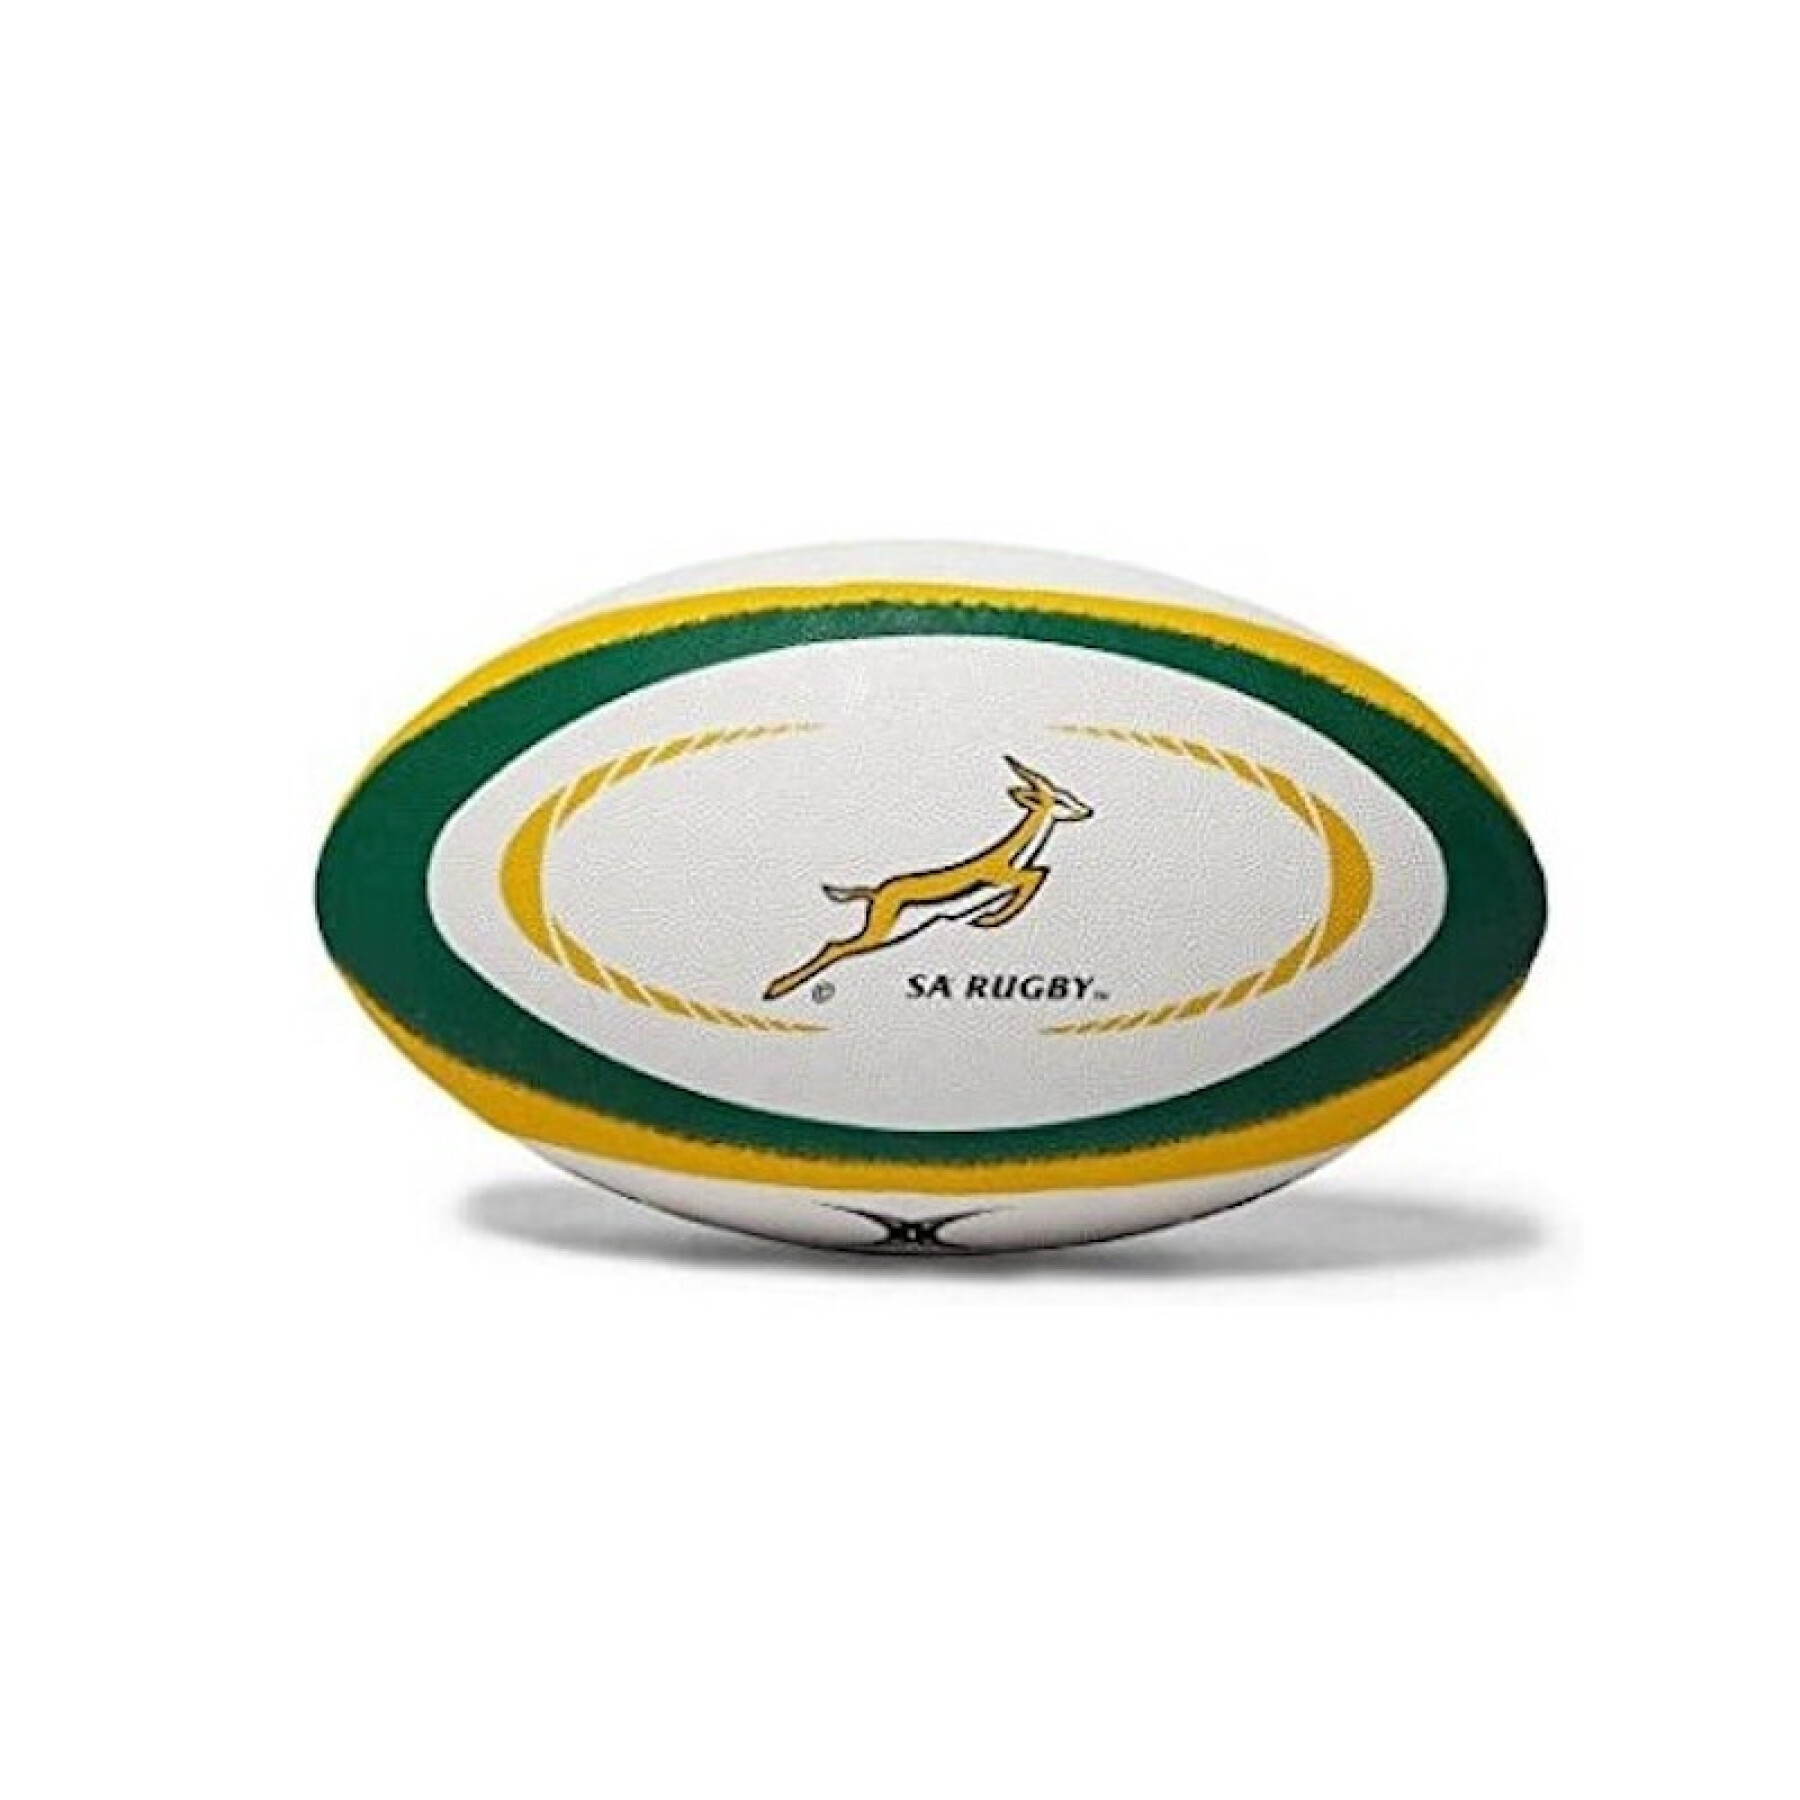 Replica rugbybal Gilbert Afrique du Sud (maat 5)